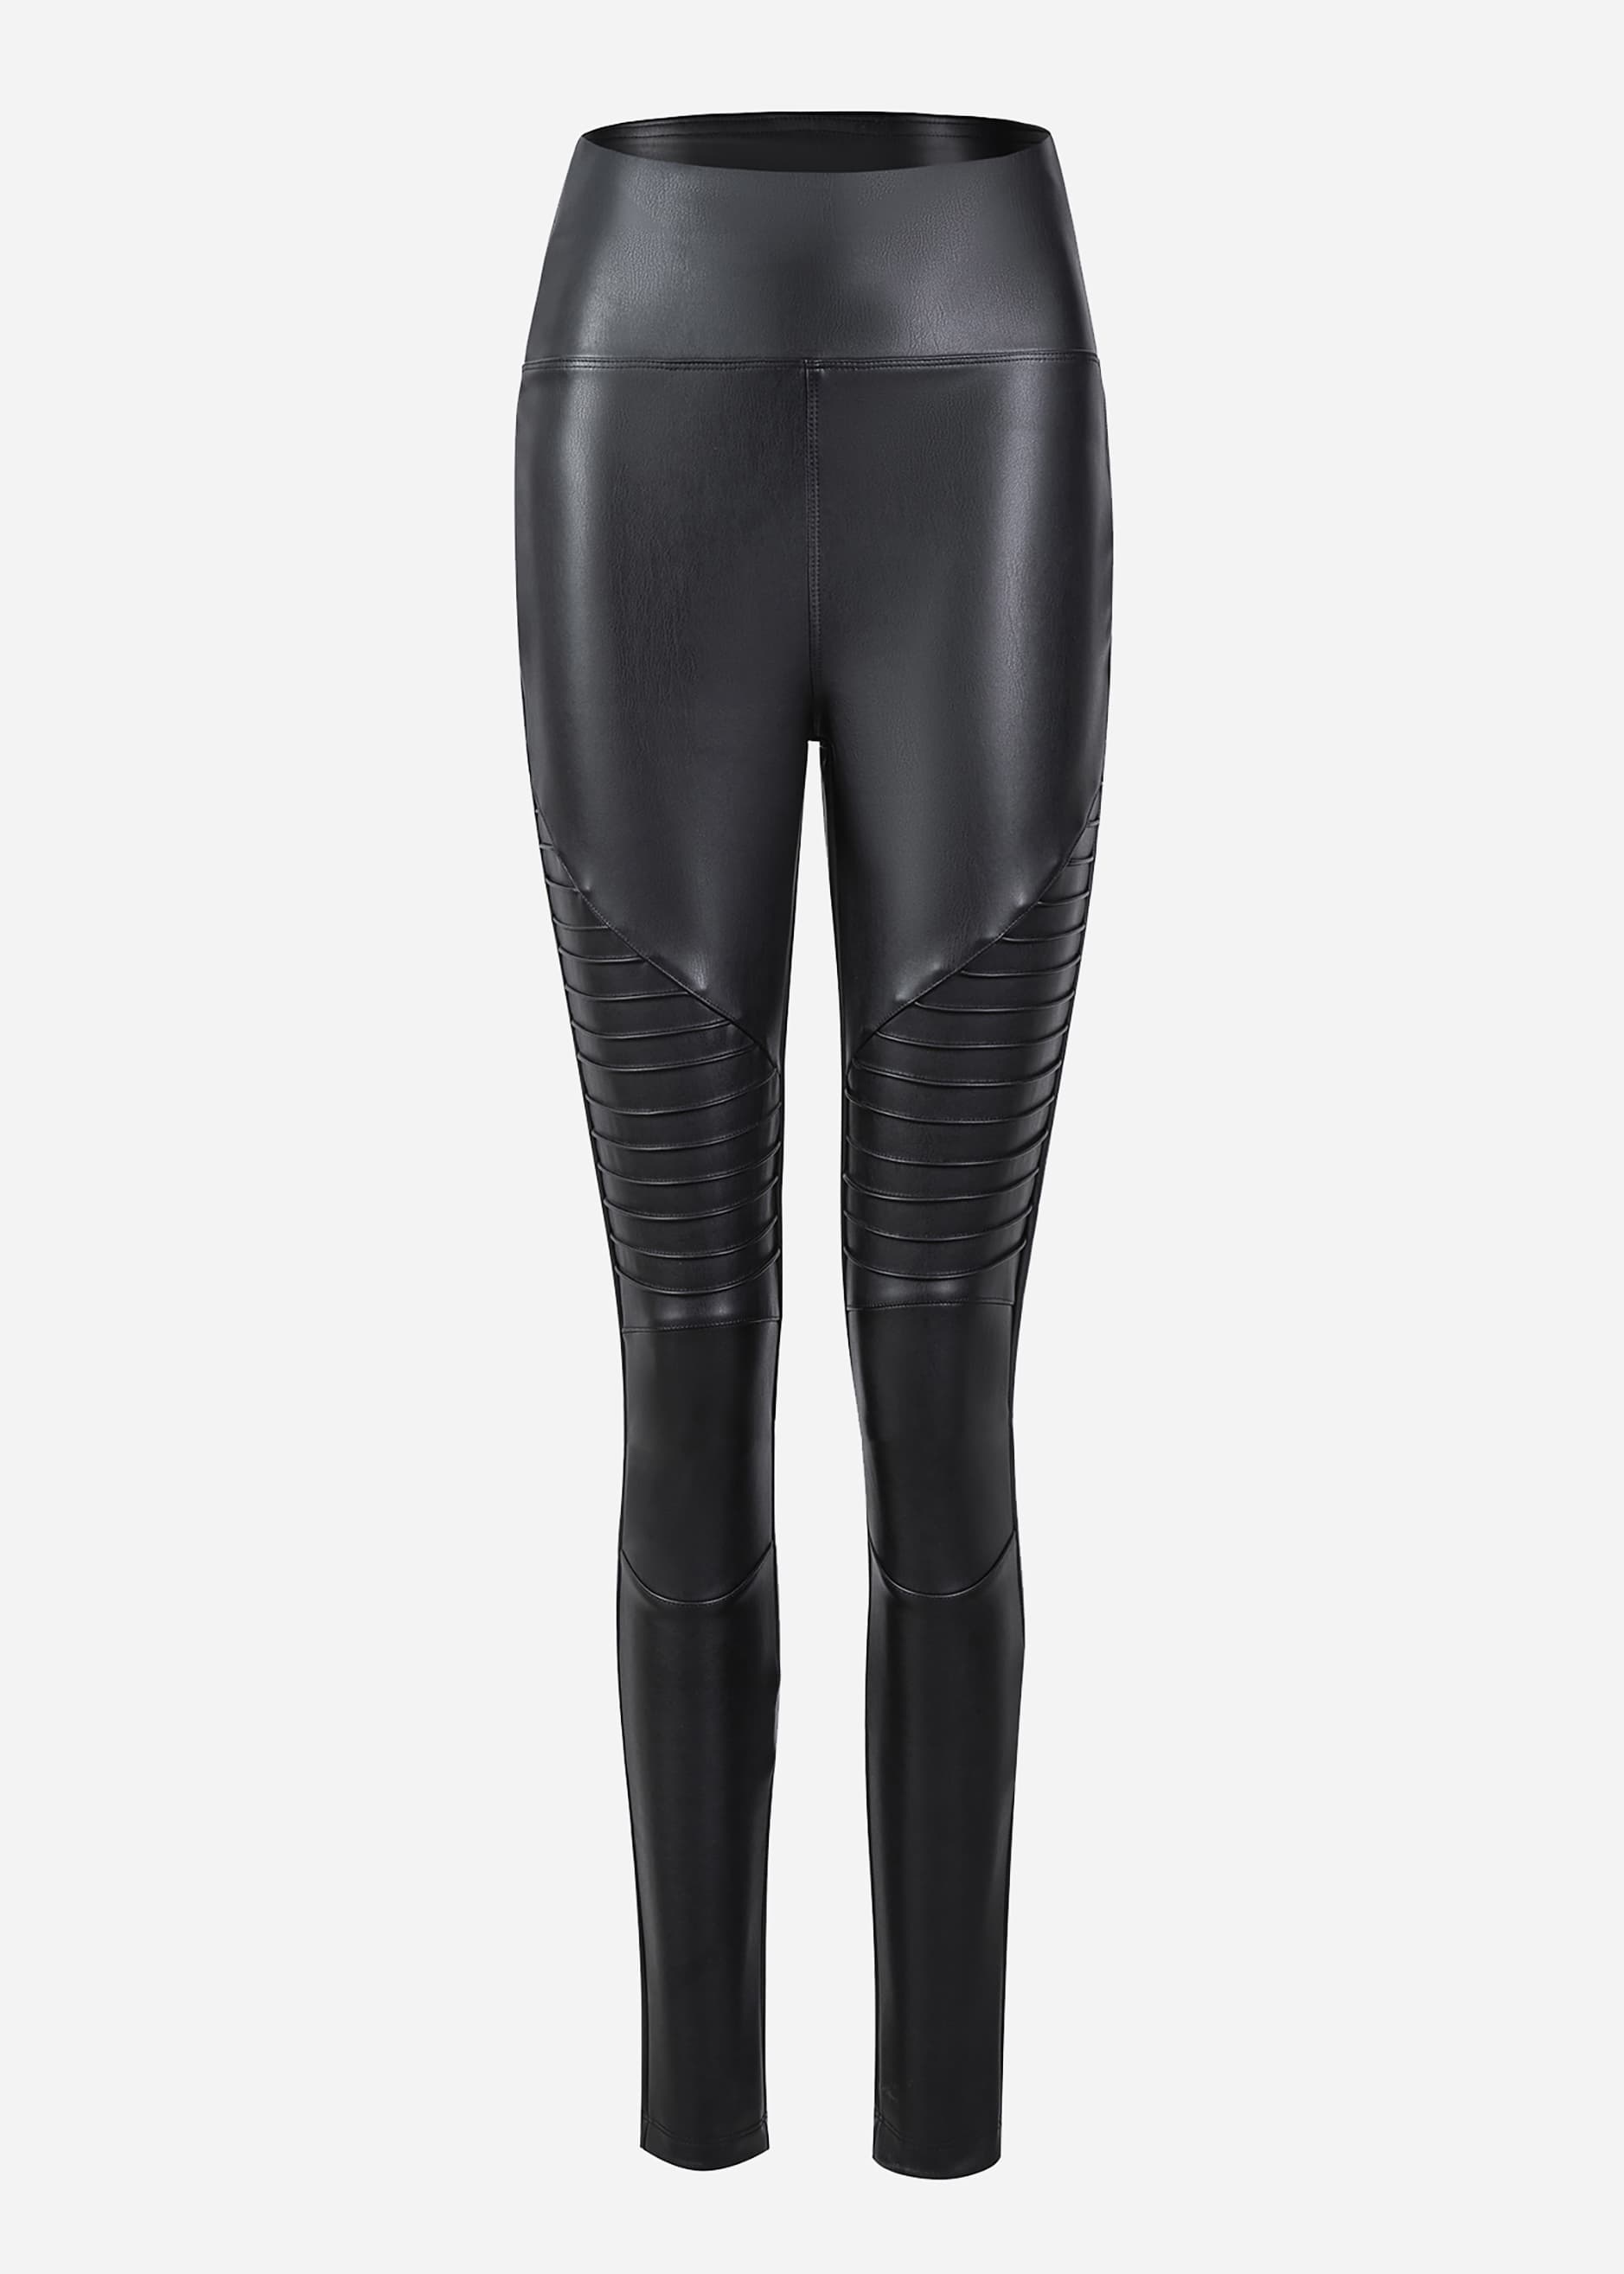 Ladies Faux Leather Thermal Leggings IN Biker Style Black #H2236